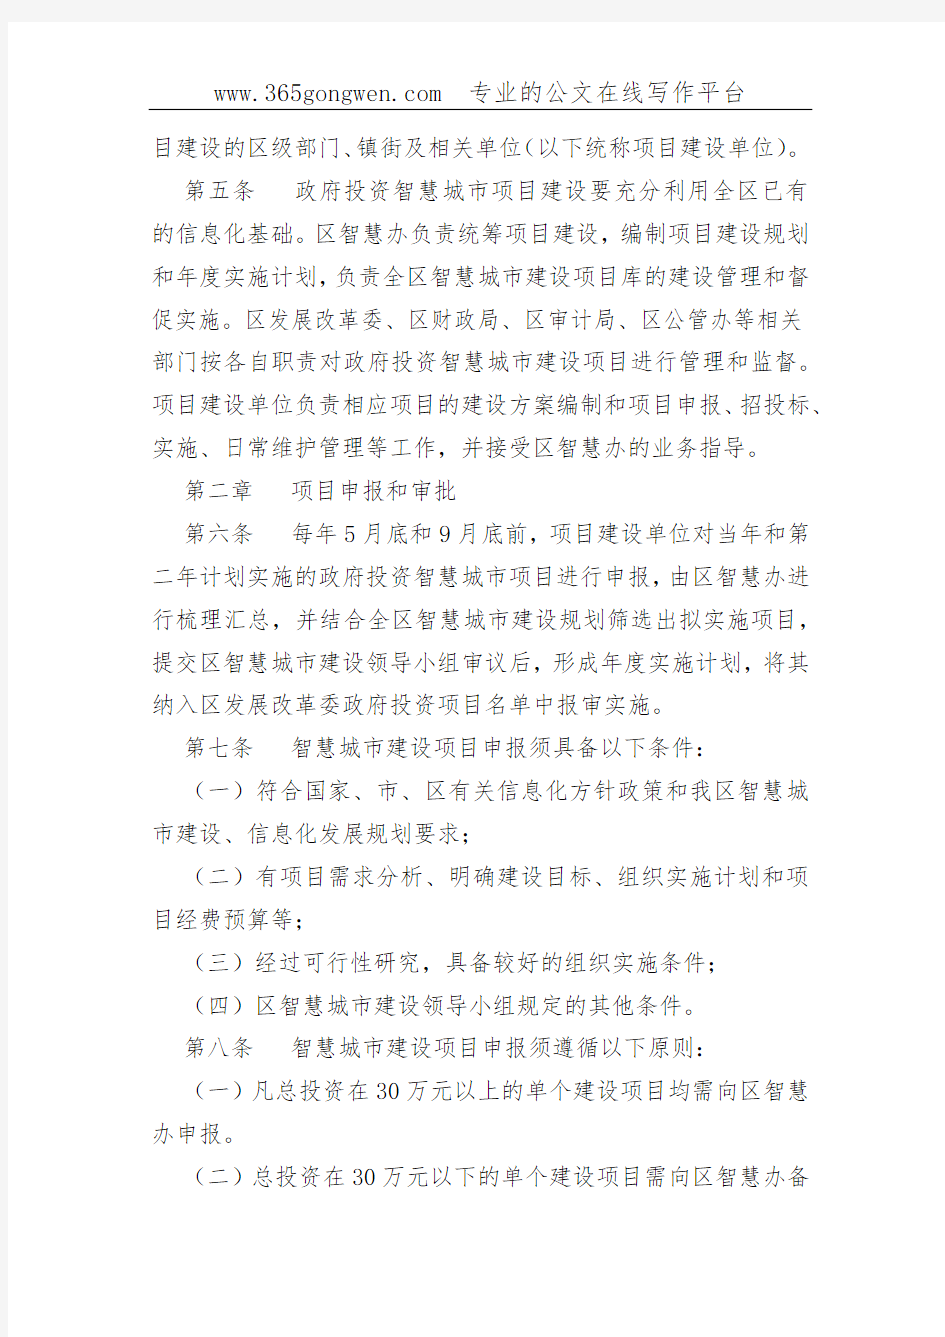 【工信办法】重庆市九龙坡区智慧城市建设项目管理办法(试行)